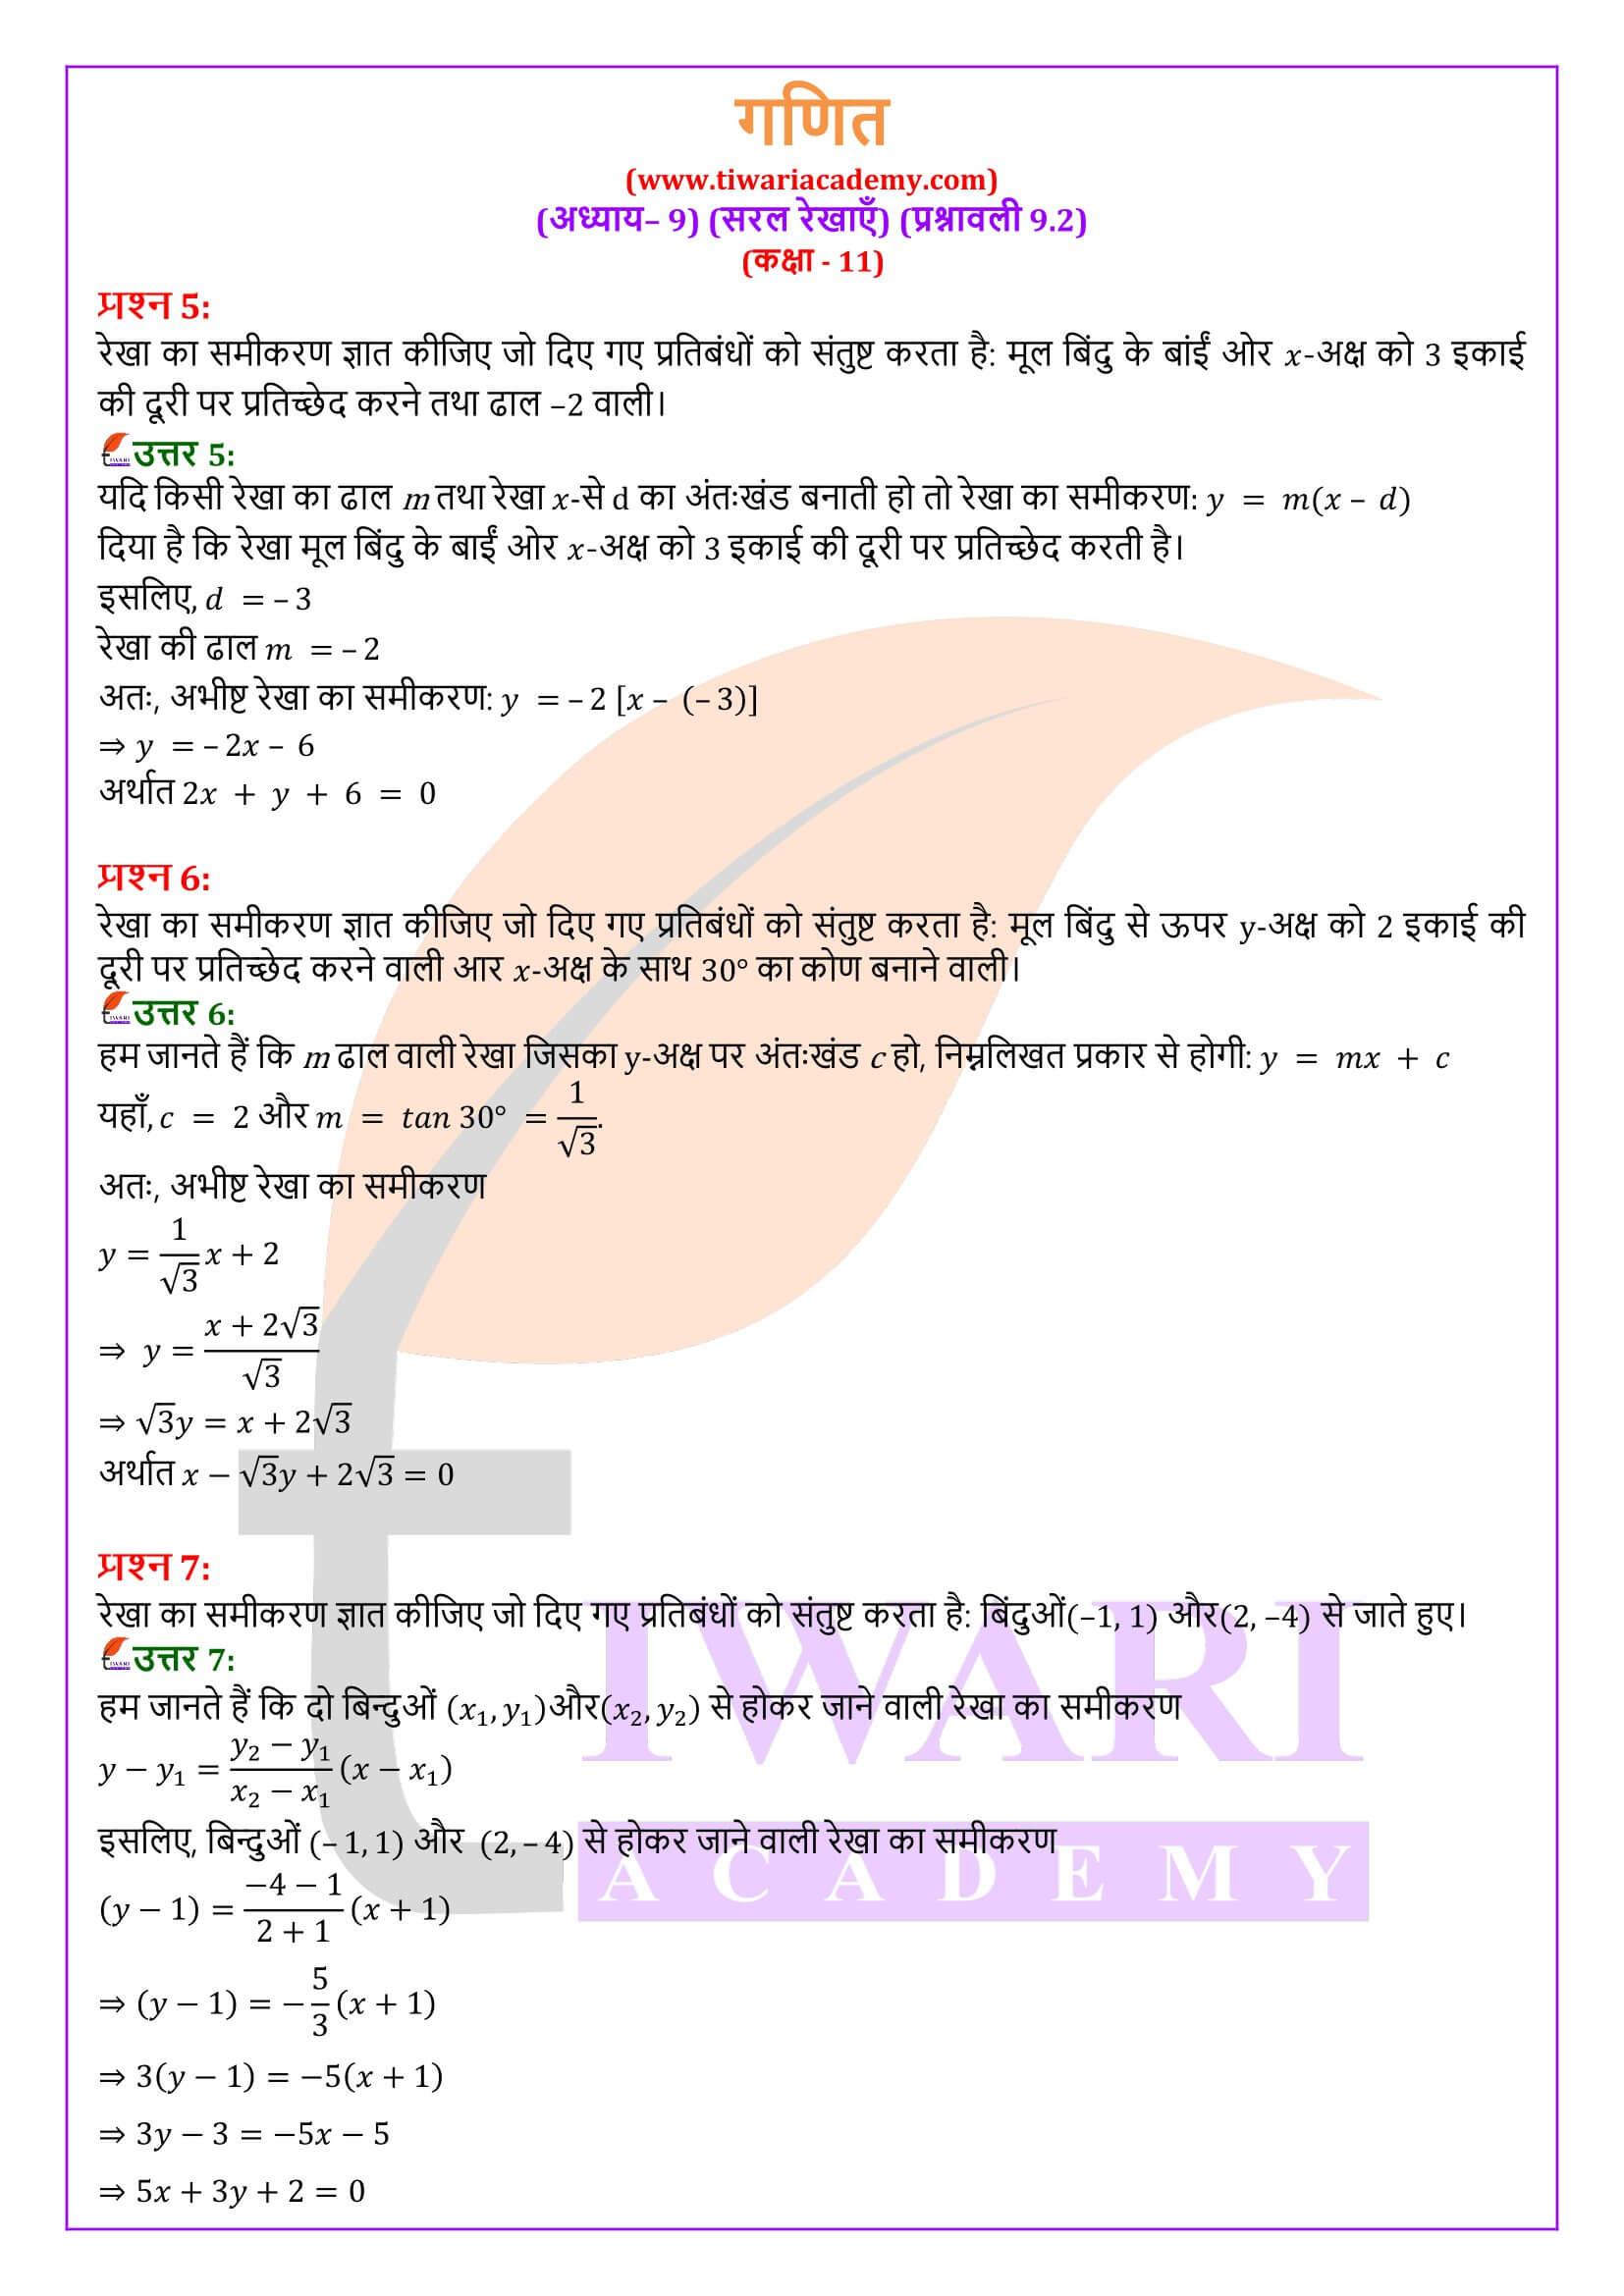 एनसीईआरटी समाधान कक्षा 11 गणित प्रश्नावली 9.2 हिंदी मीडियम में